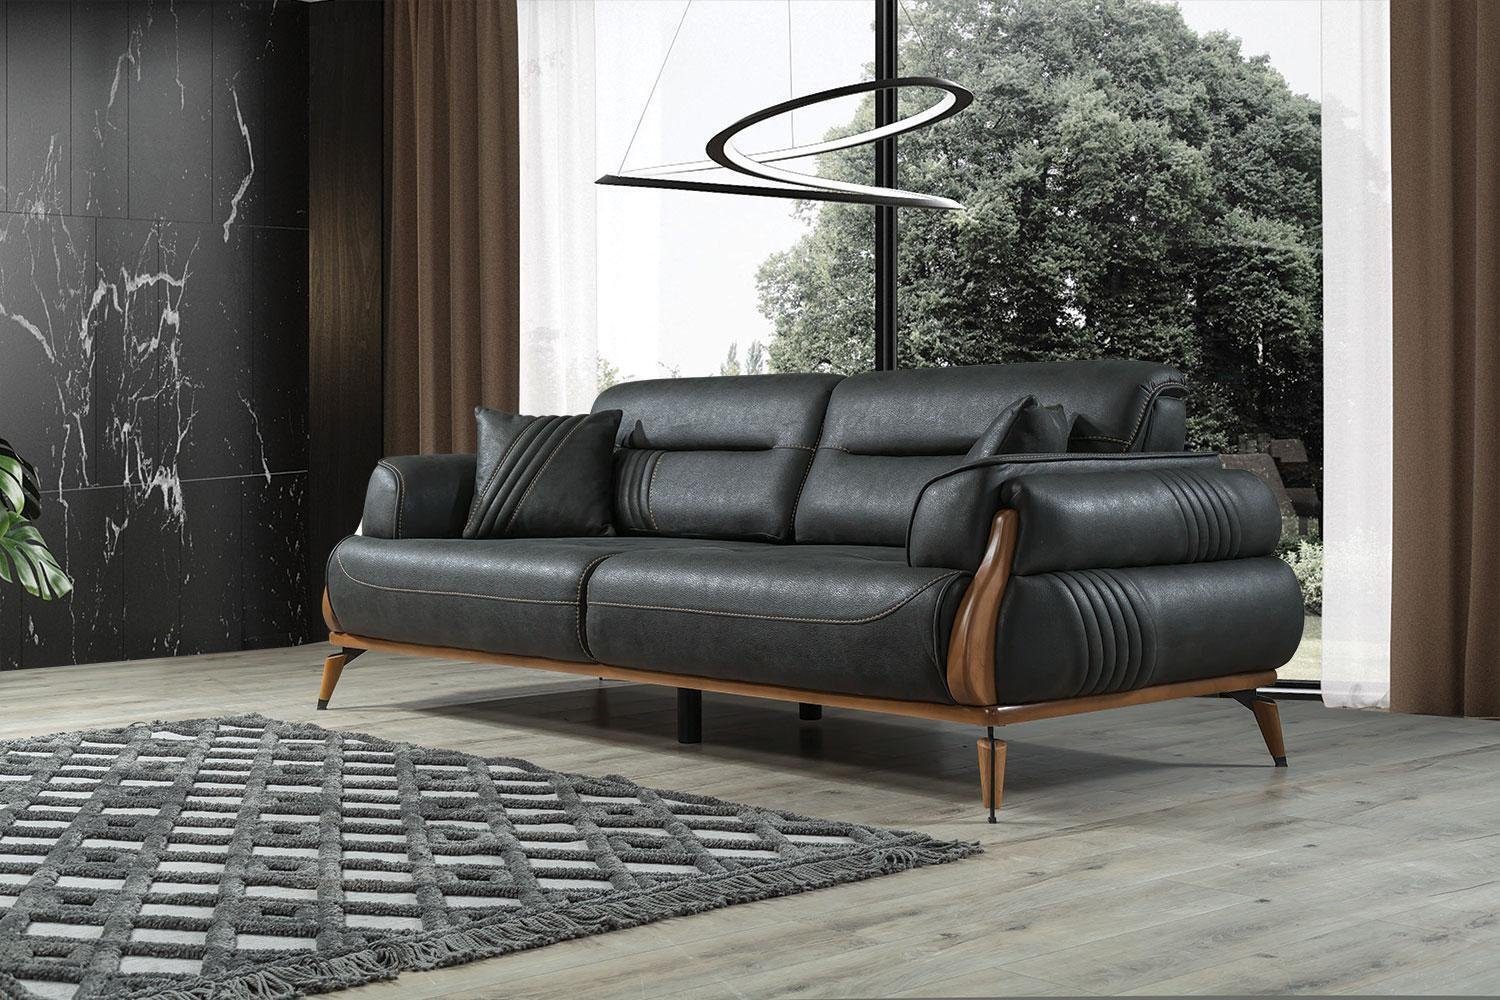 JVmoebel Sofa Design Sofa 3 Sitzer Wohnzimmer Couch Polster Sofas Dreisitzer Neu, 1 Teile, Made in Europa